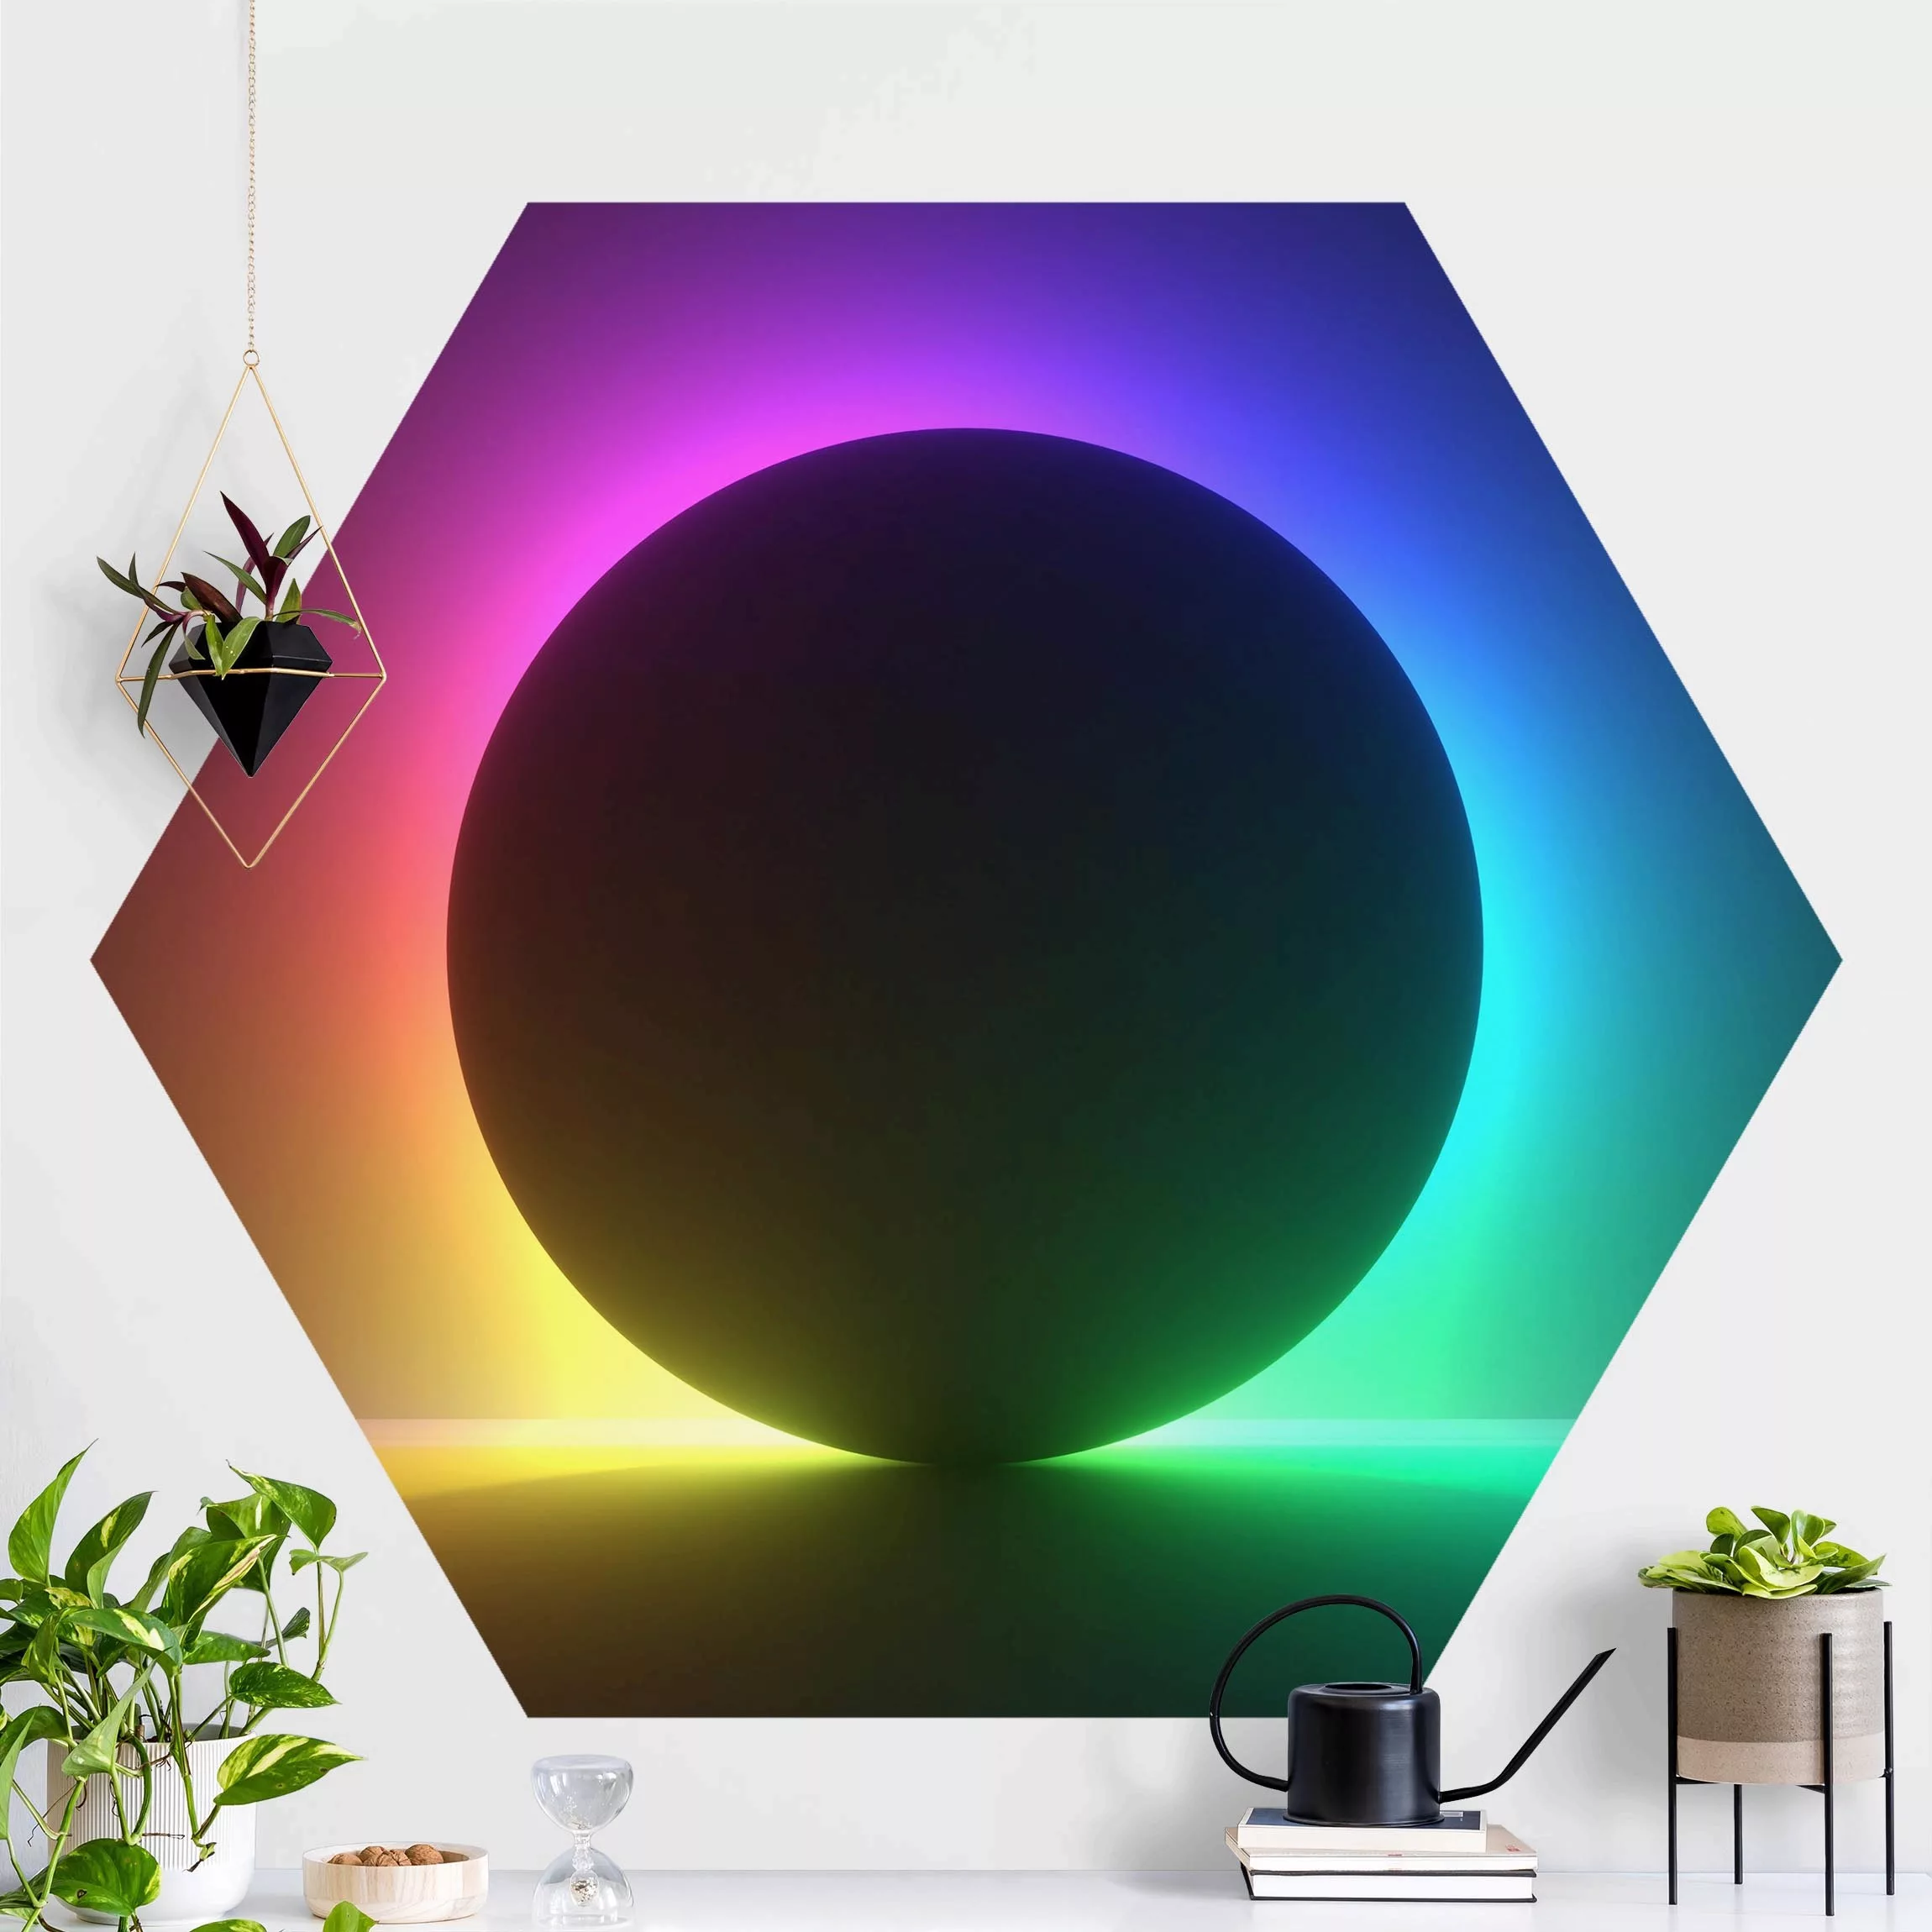 Hexagon Mustertapete selbstklebend Schwarzer Kreis mit Neonlicht günstig online kaufen